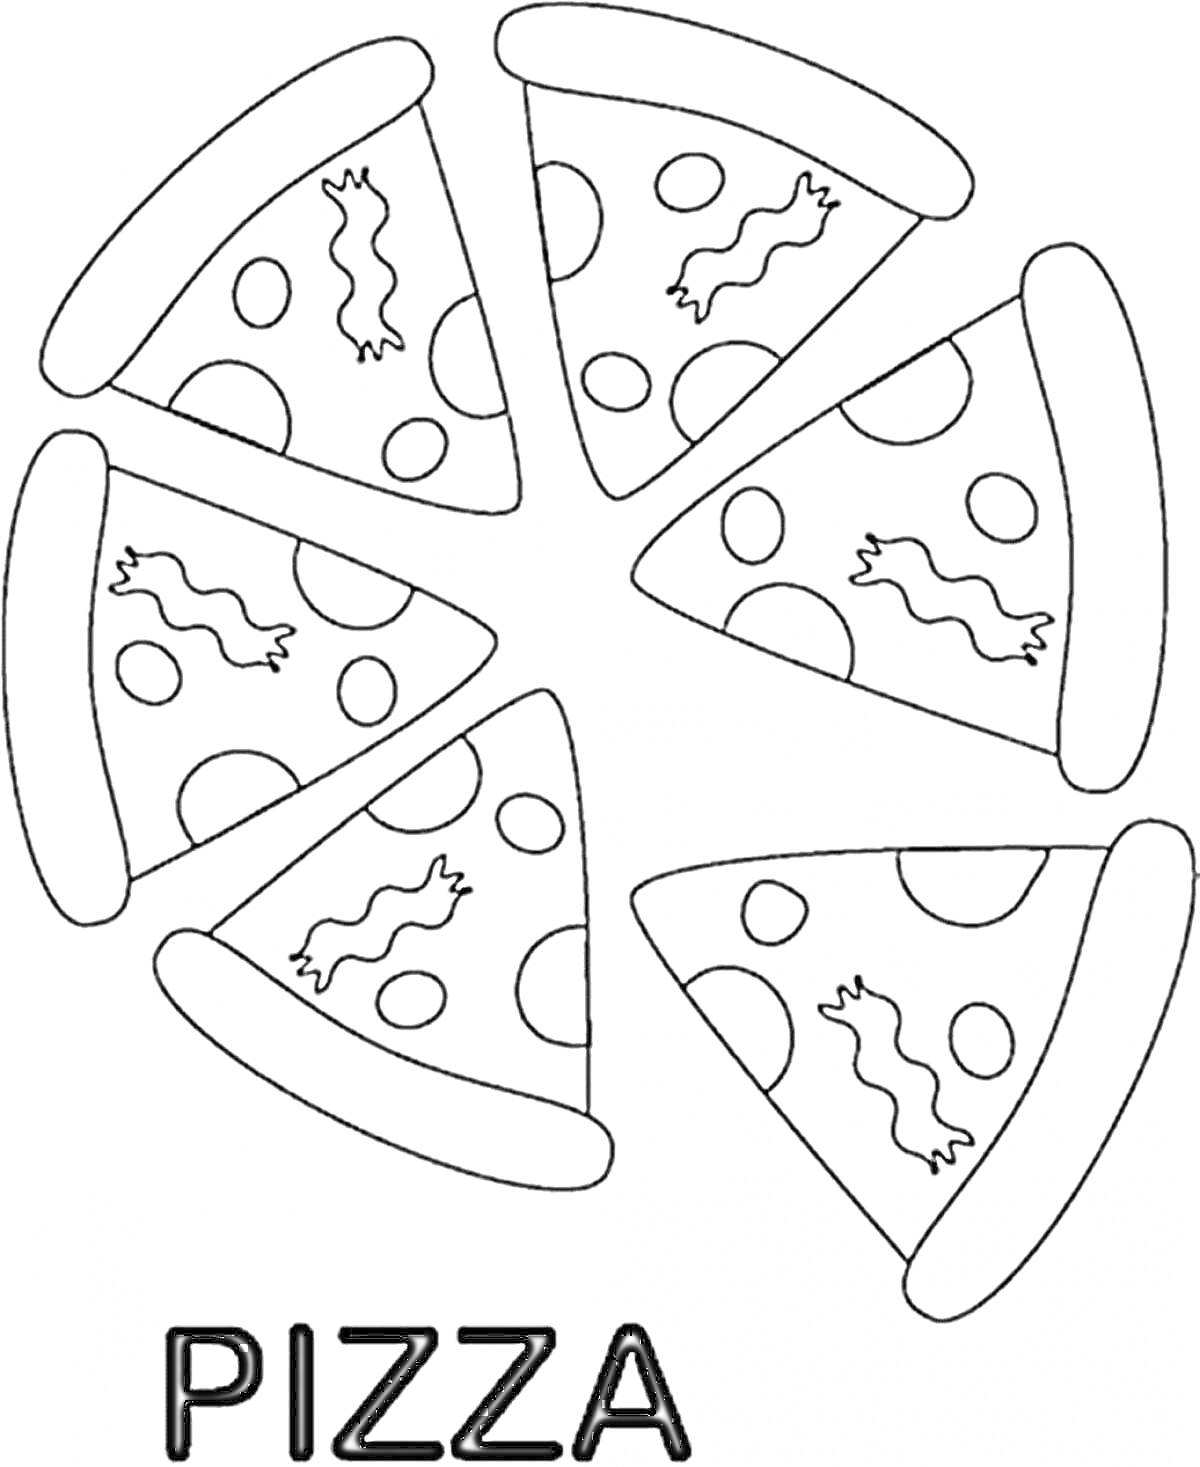 Чёрно-белая раскраска с изображением шести кусочков пиццы с колбасками и круглыми ломтиками сыра, разложенных в круг. Внизу написано слово 